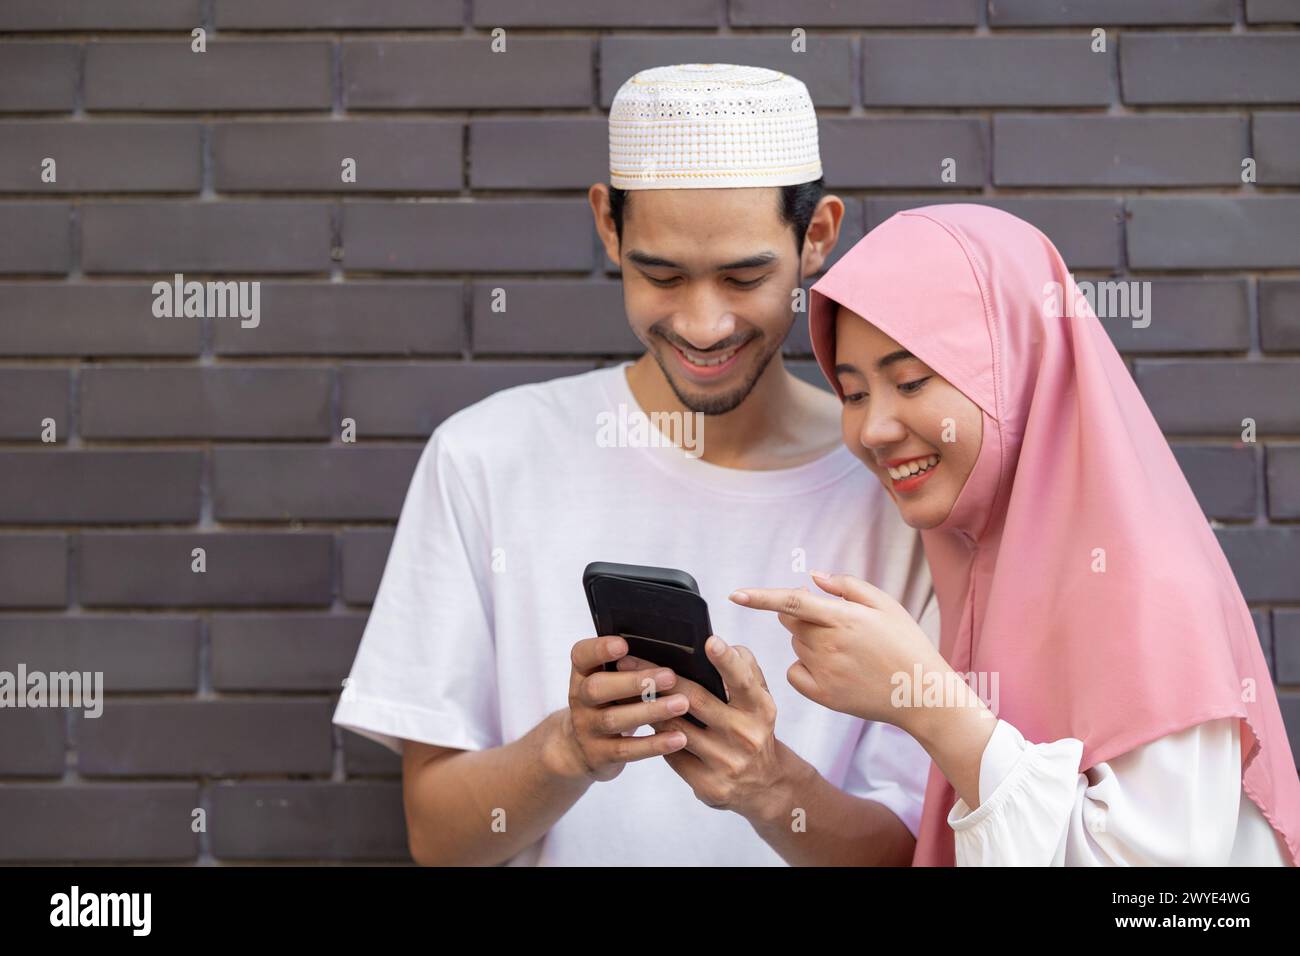 persone musulmane adolescenti felice giocare smartphone rilassarsi godere insieme. islamico che usa il cellulare all'aperto Foto Stock